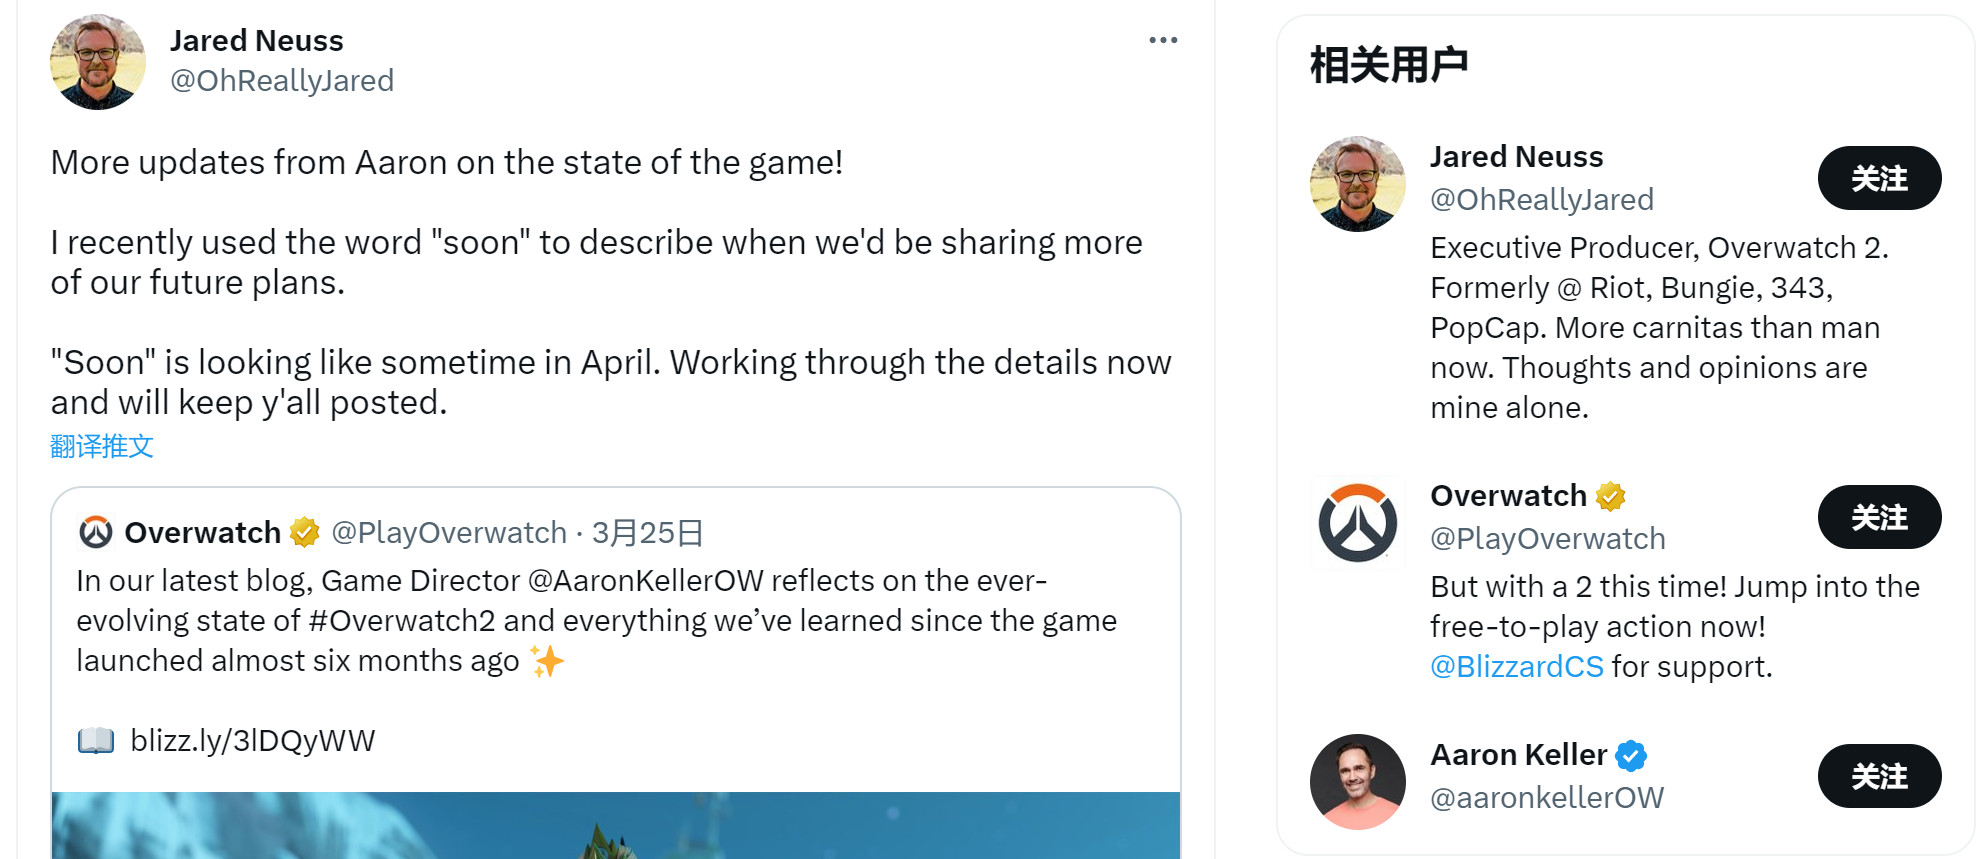 《鬥陣特攻2》團隊計劃在4月公布未來更新細節